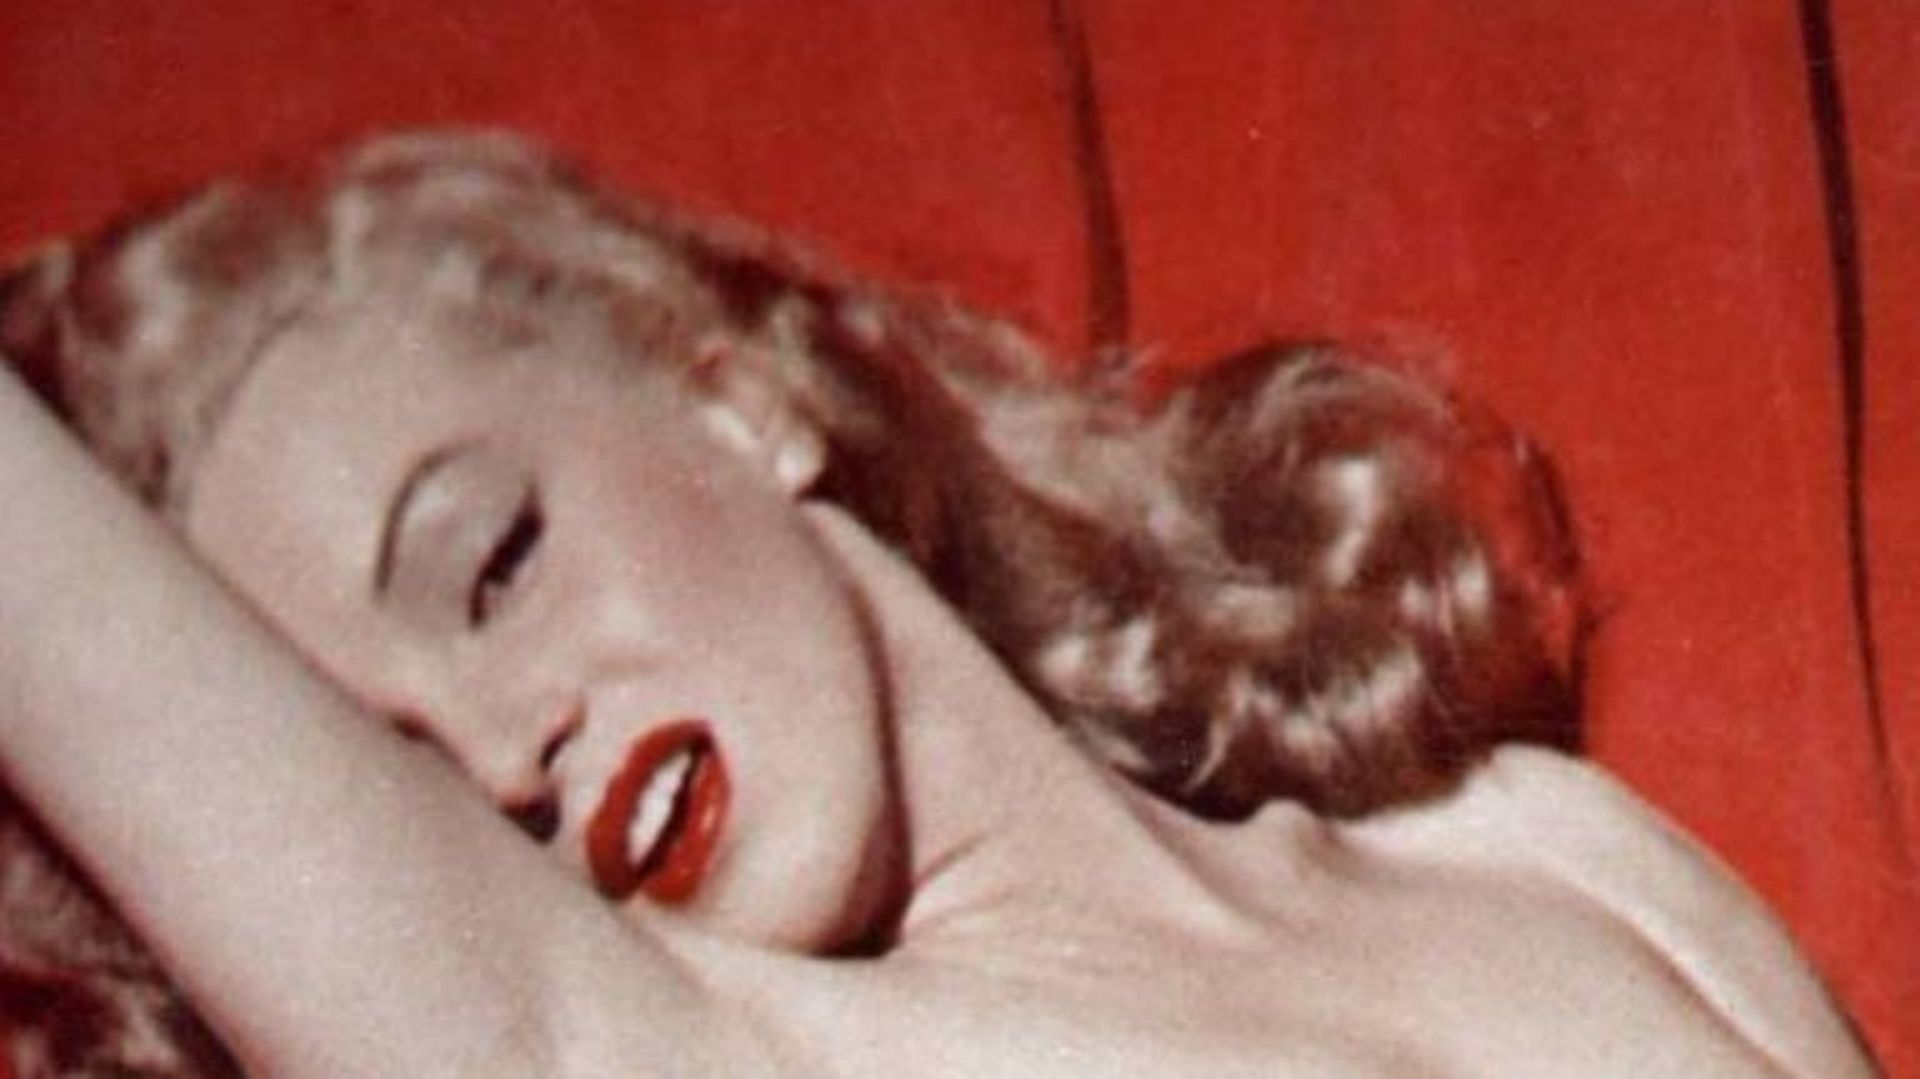 Mona Monroe pose nue pour un calendrier et devient Marilyn Monroe